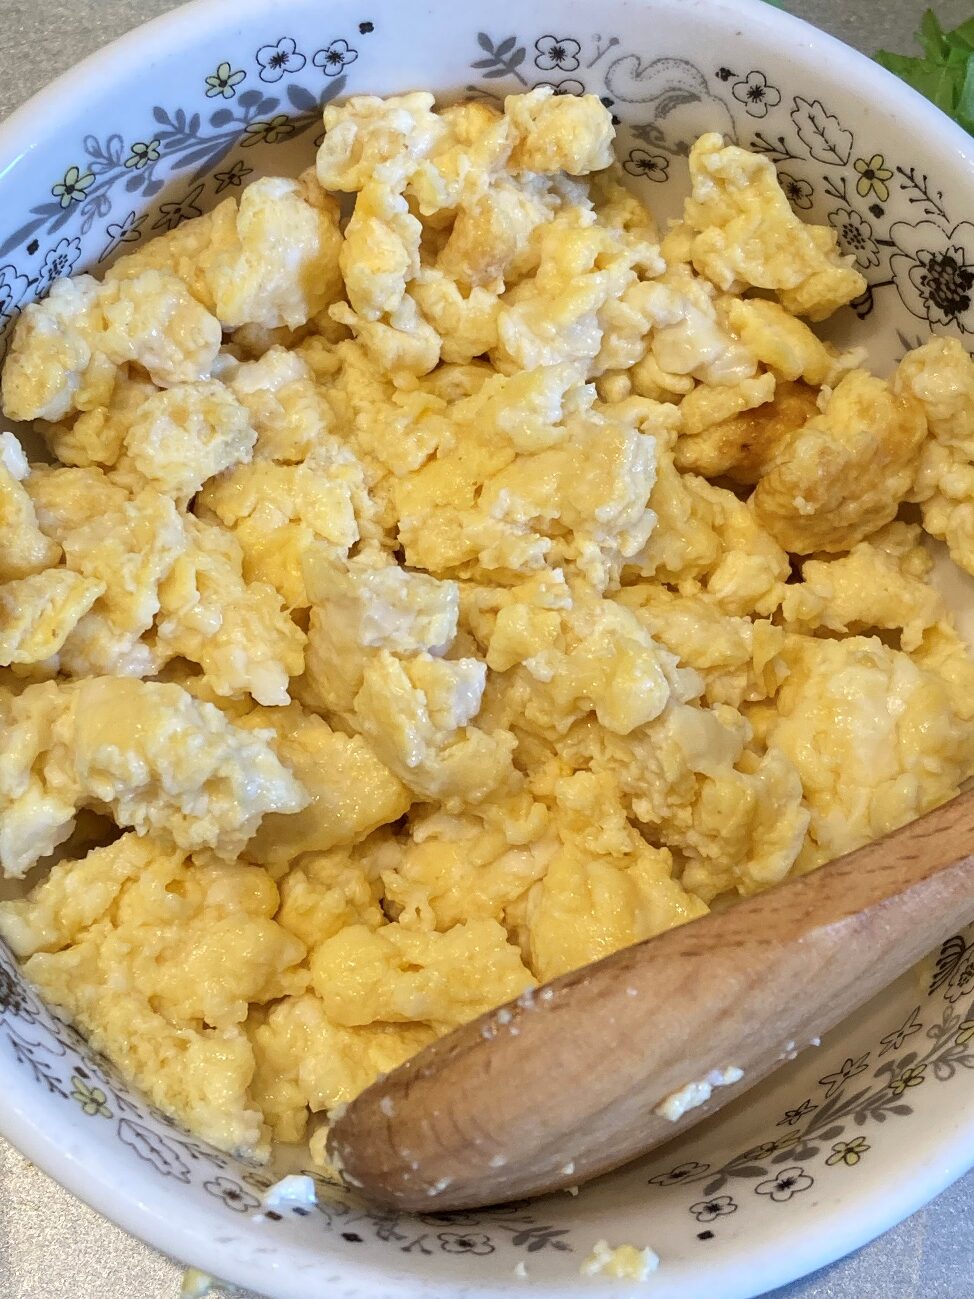 炒り卵を作る